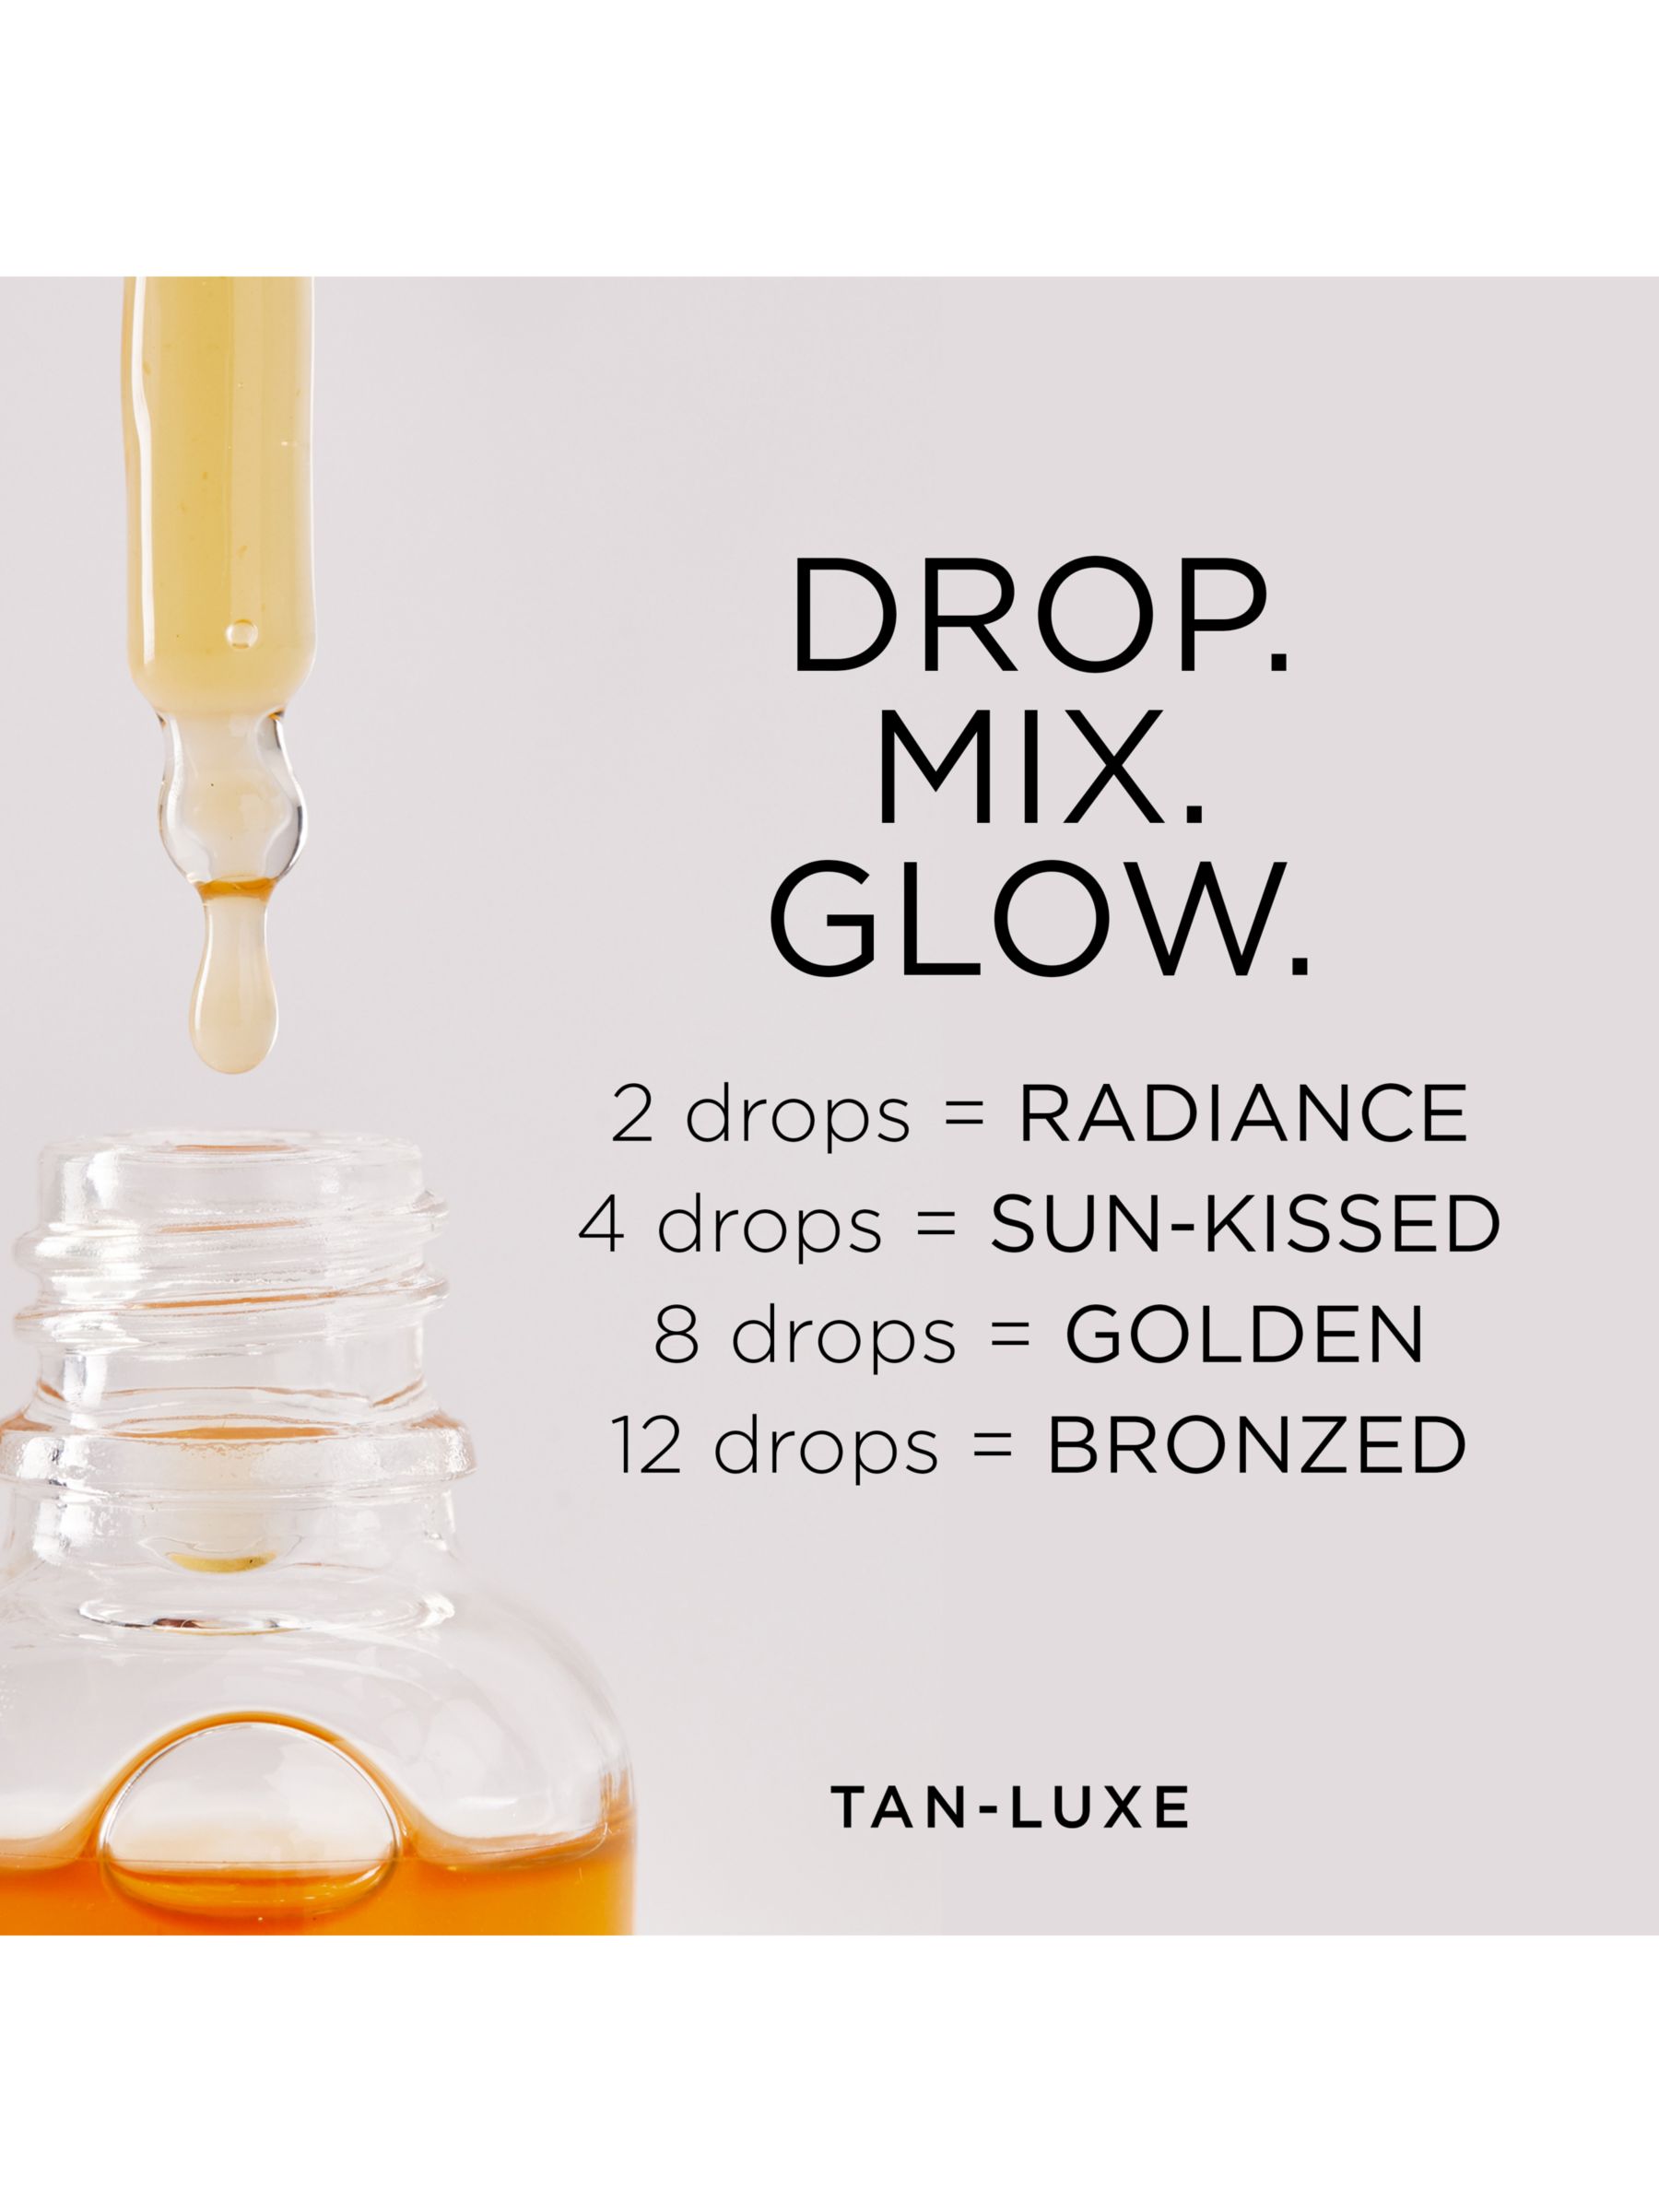 Tan-Luxe The Body Illuminating Self-Tan Drops, Light/Medium 6